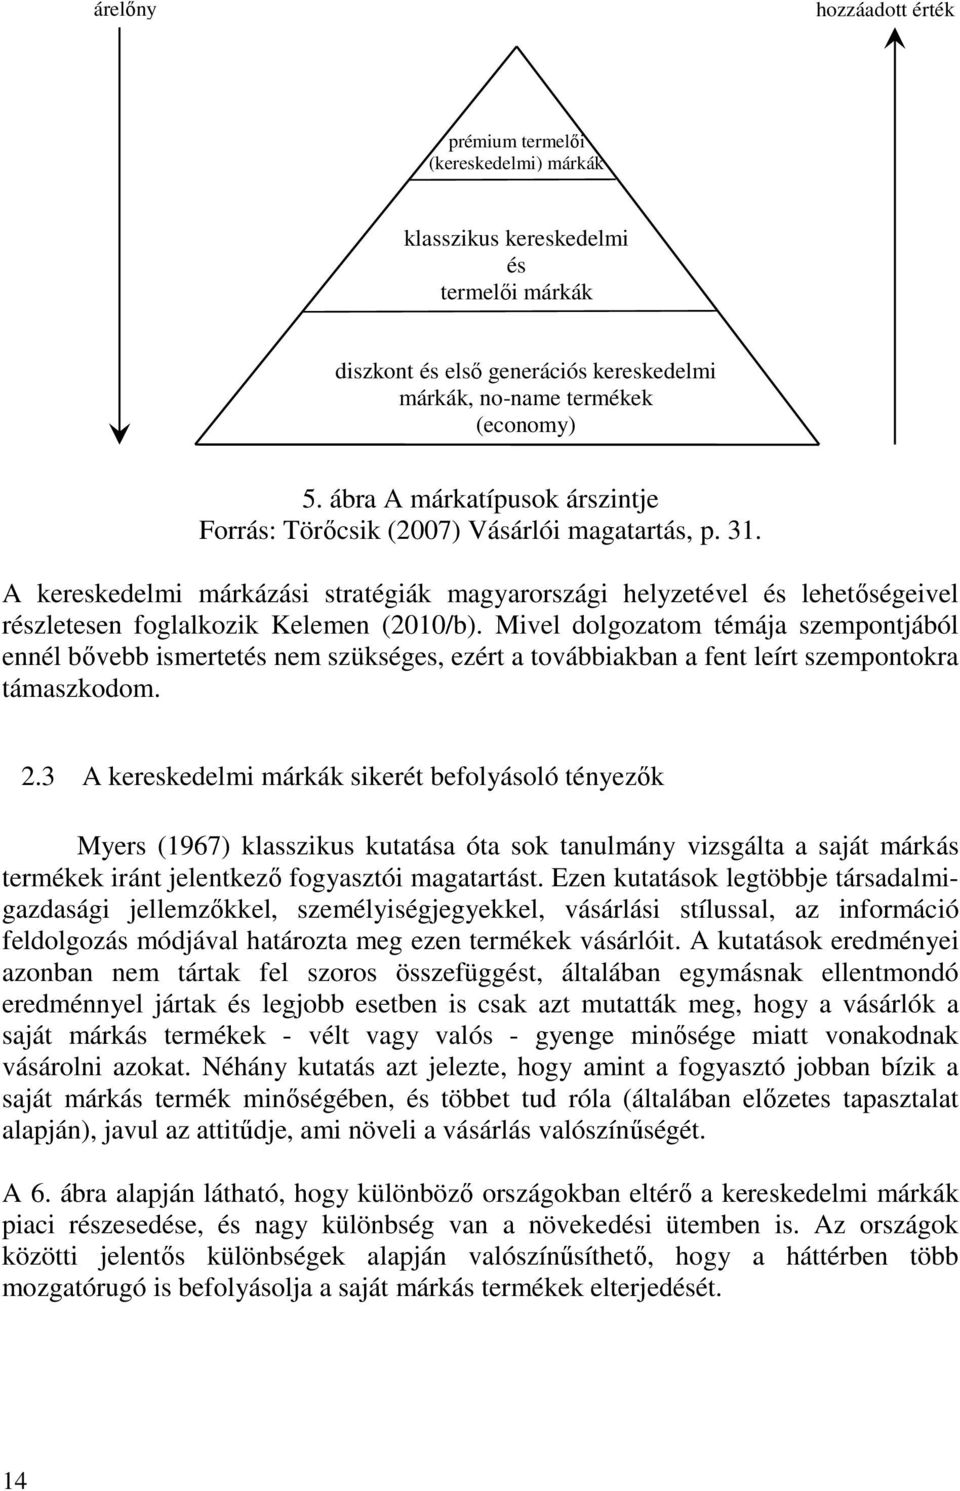 A kereskedelmi márkázási stratégiák magyarországi helyzetével és lehetőségeivel részletesen foglalkozik Kelemen (2010/b).